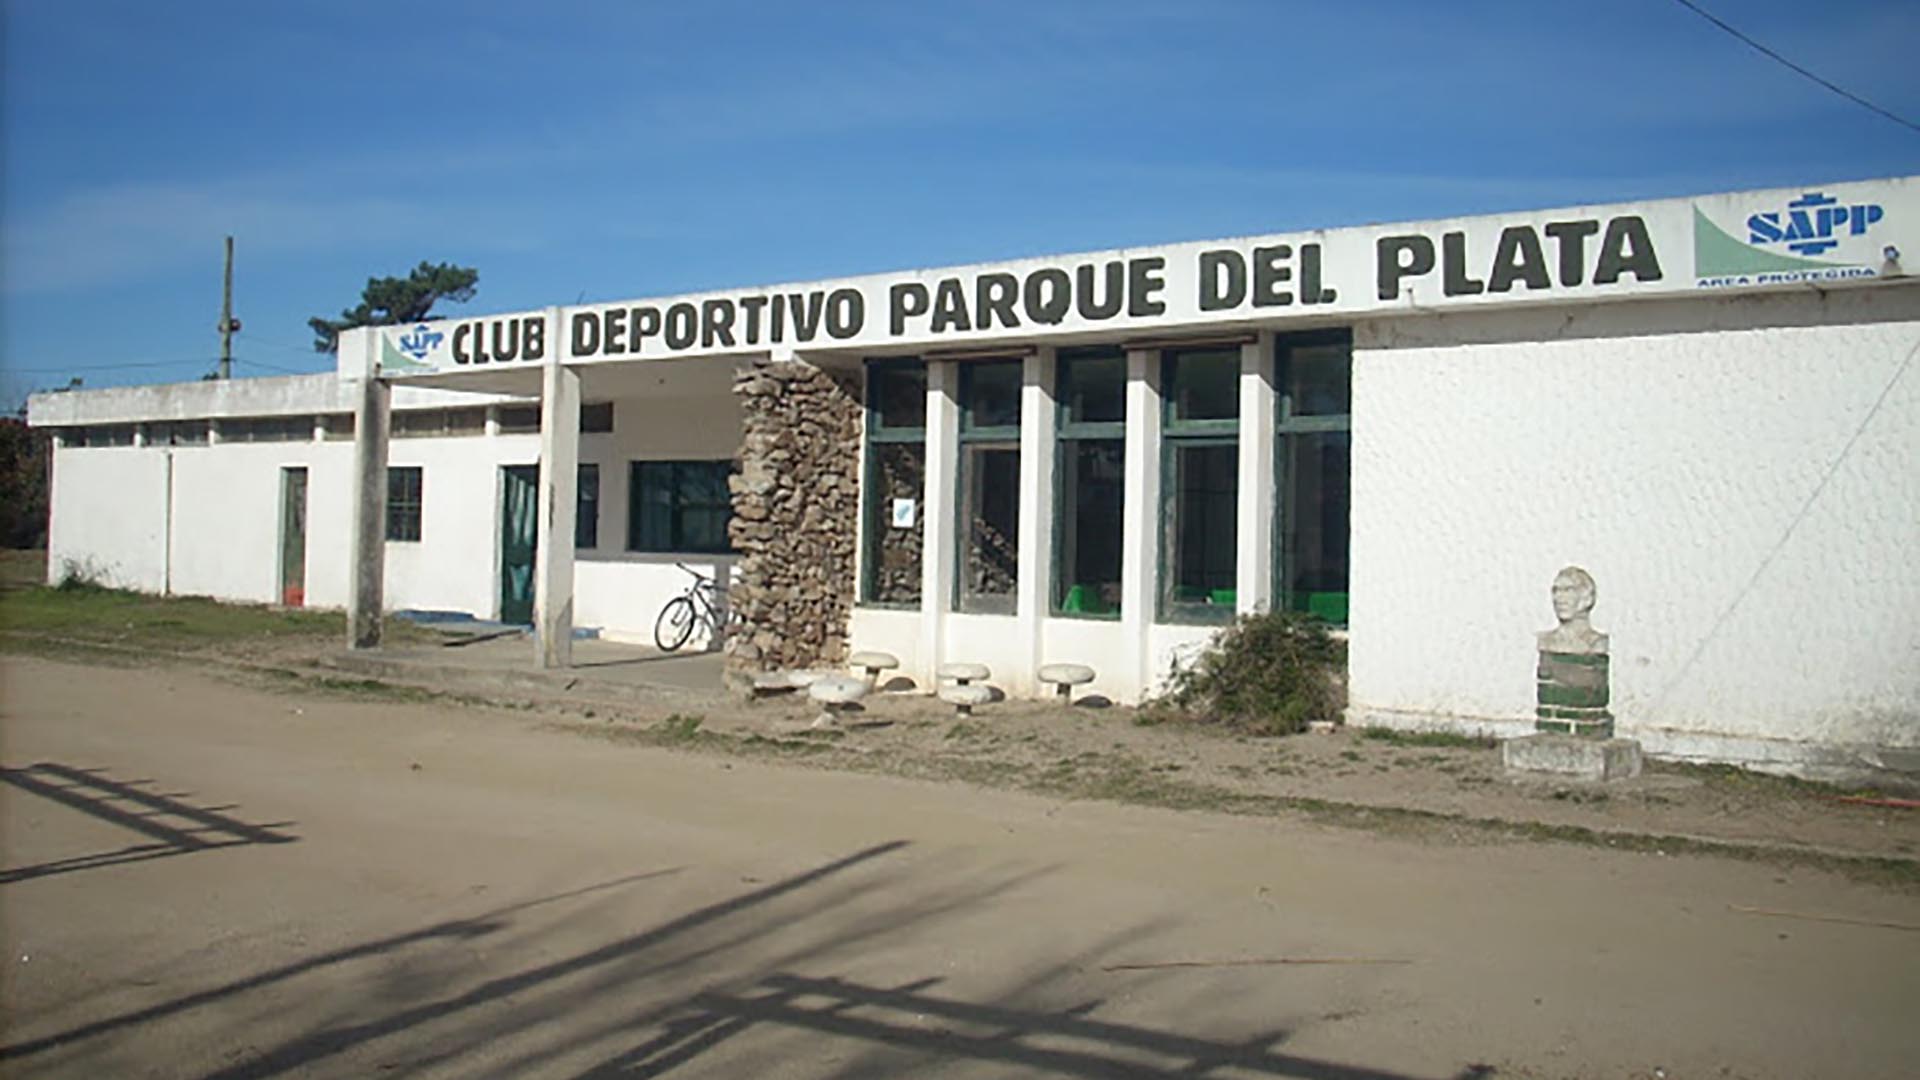 El club fue fundado en 1948 y, tras algunos años sin actividad, su equipo de fútbol volvió a participar el la tercera división del fútbol uruguayo en 2017

